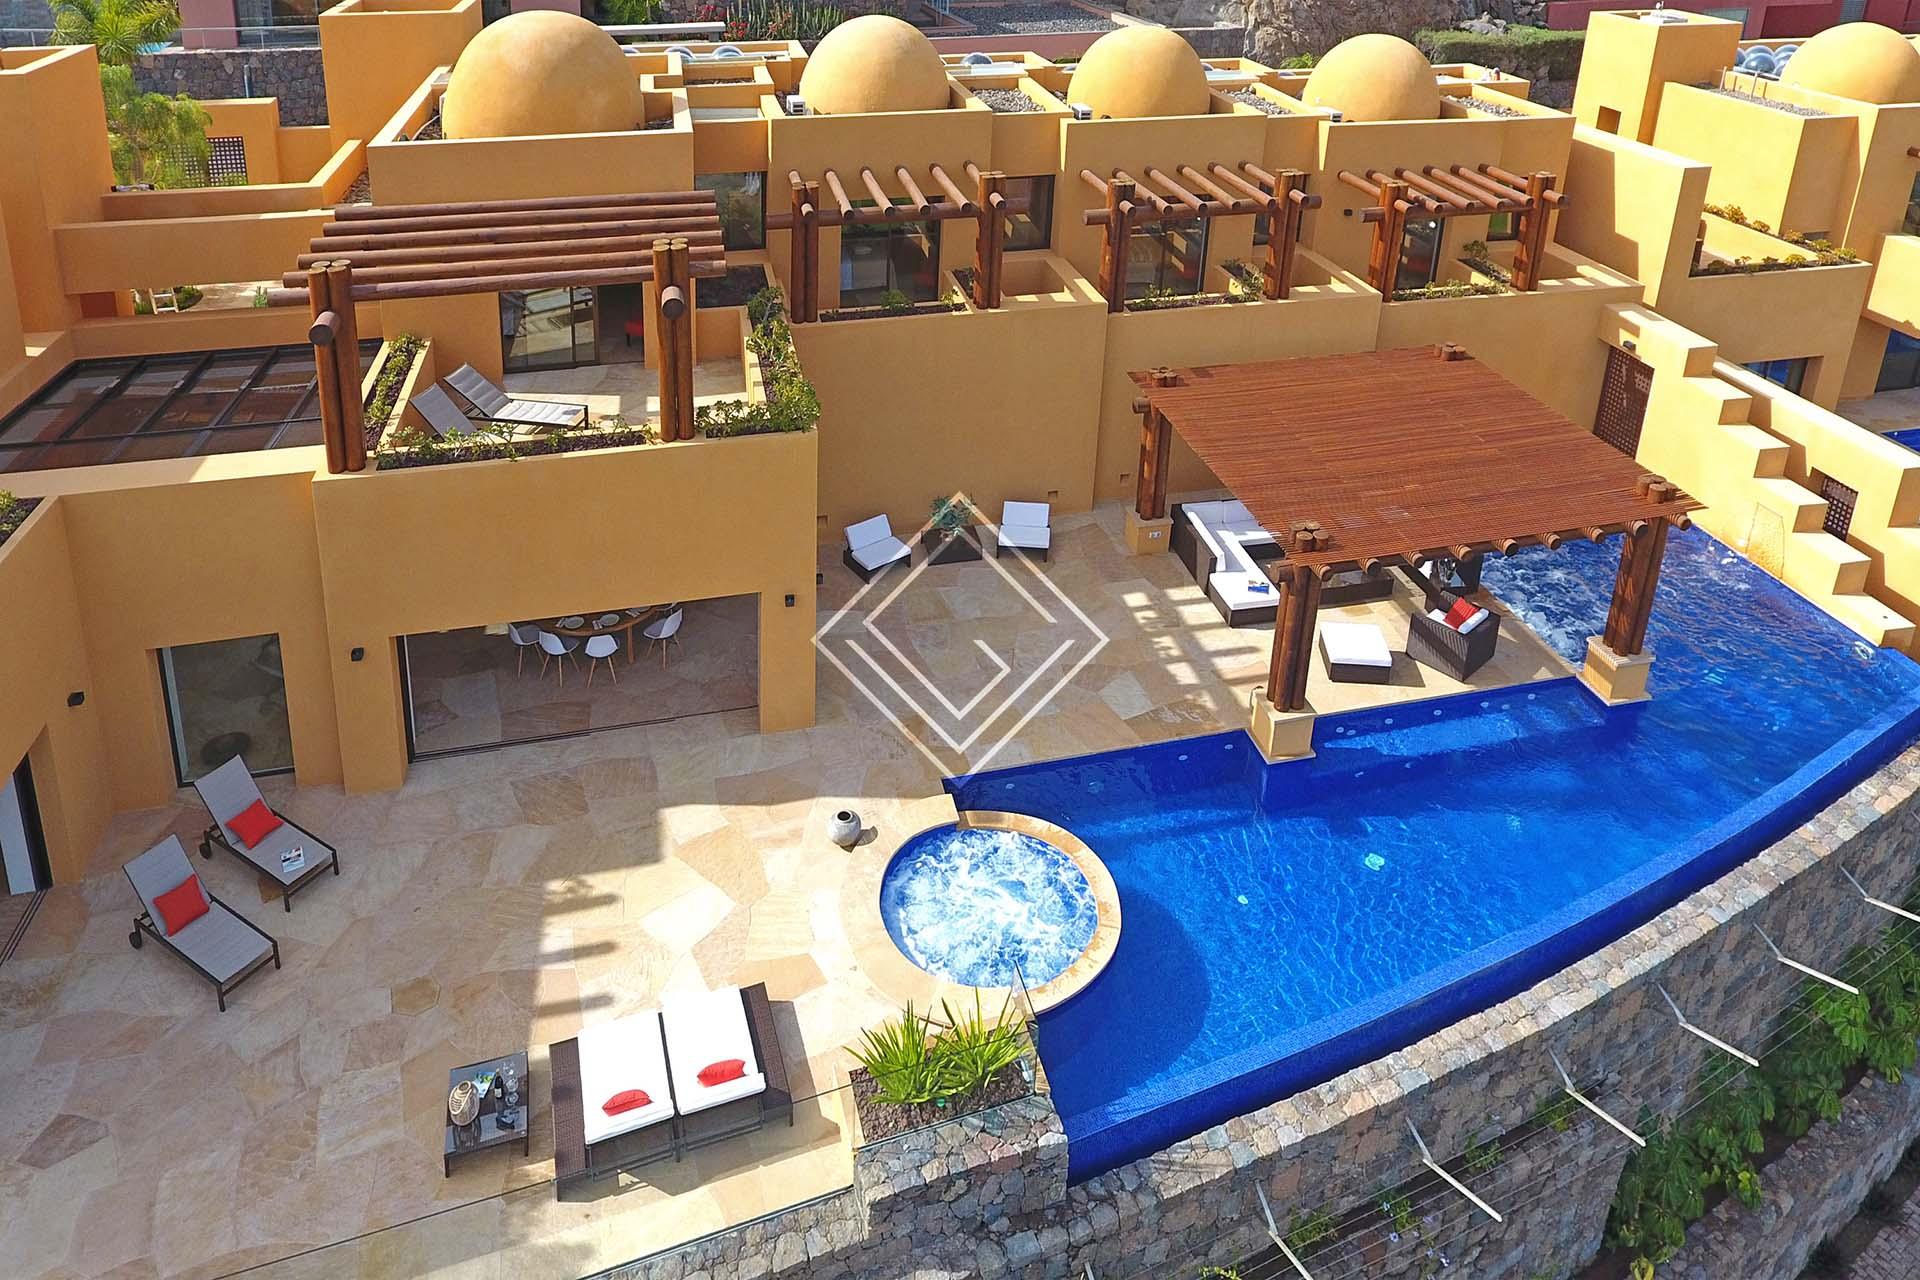 Villa de lujo con piscina exterior y jacuzzi con unas vistas espectaculares al campo de golf.